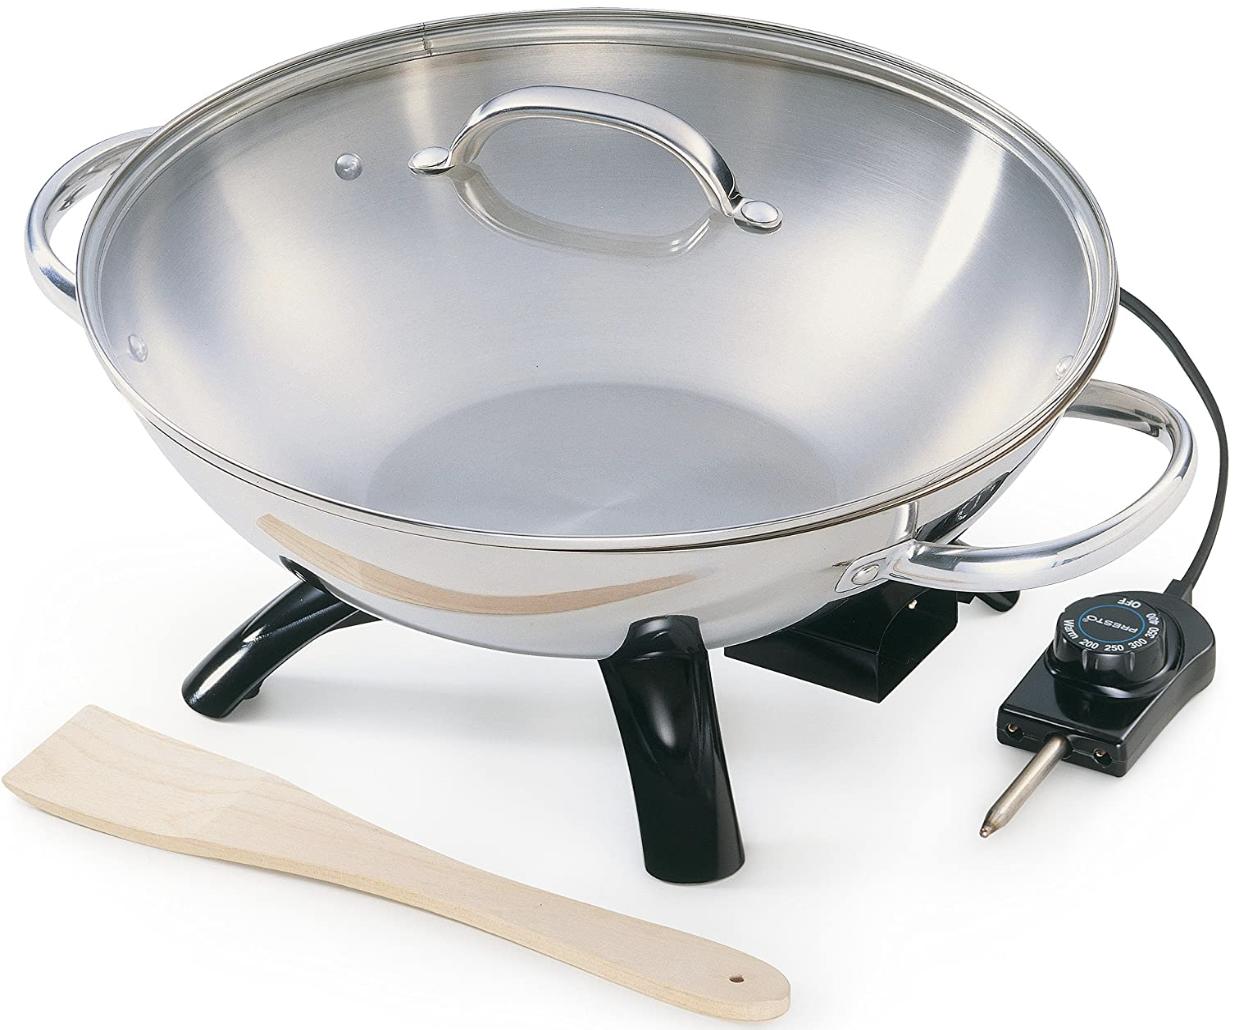 Presto 5900 Electric Wok best electric woks